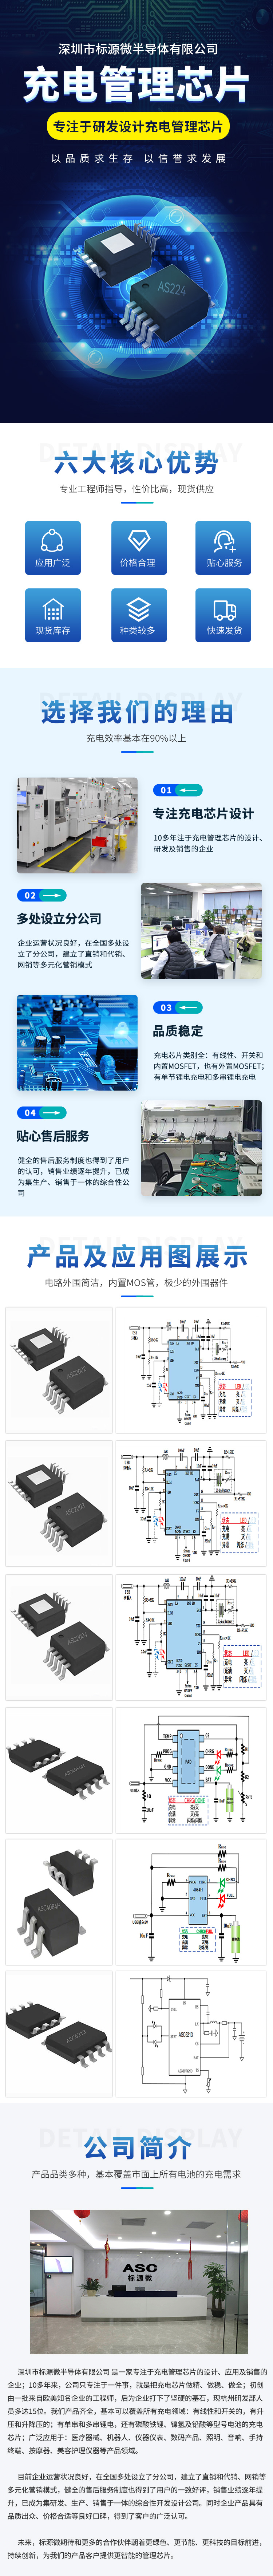 徐州AS608N升压充电管理IC方案